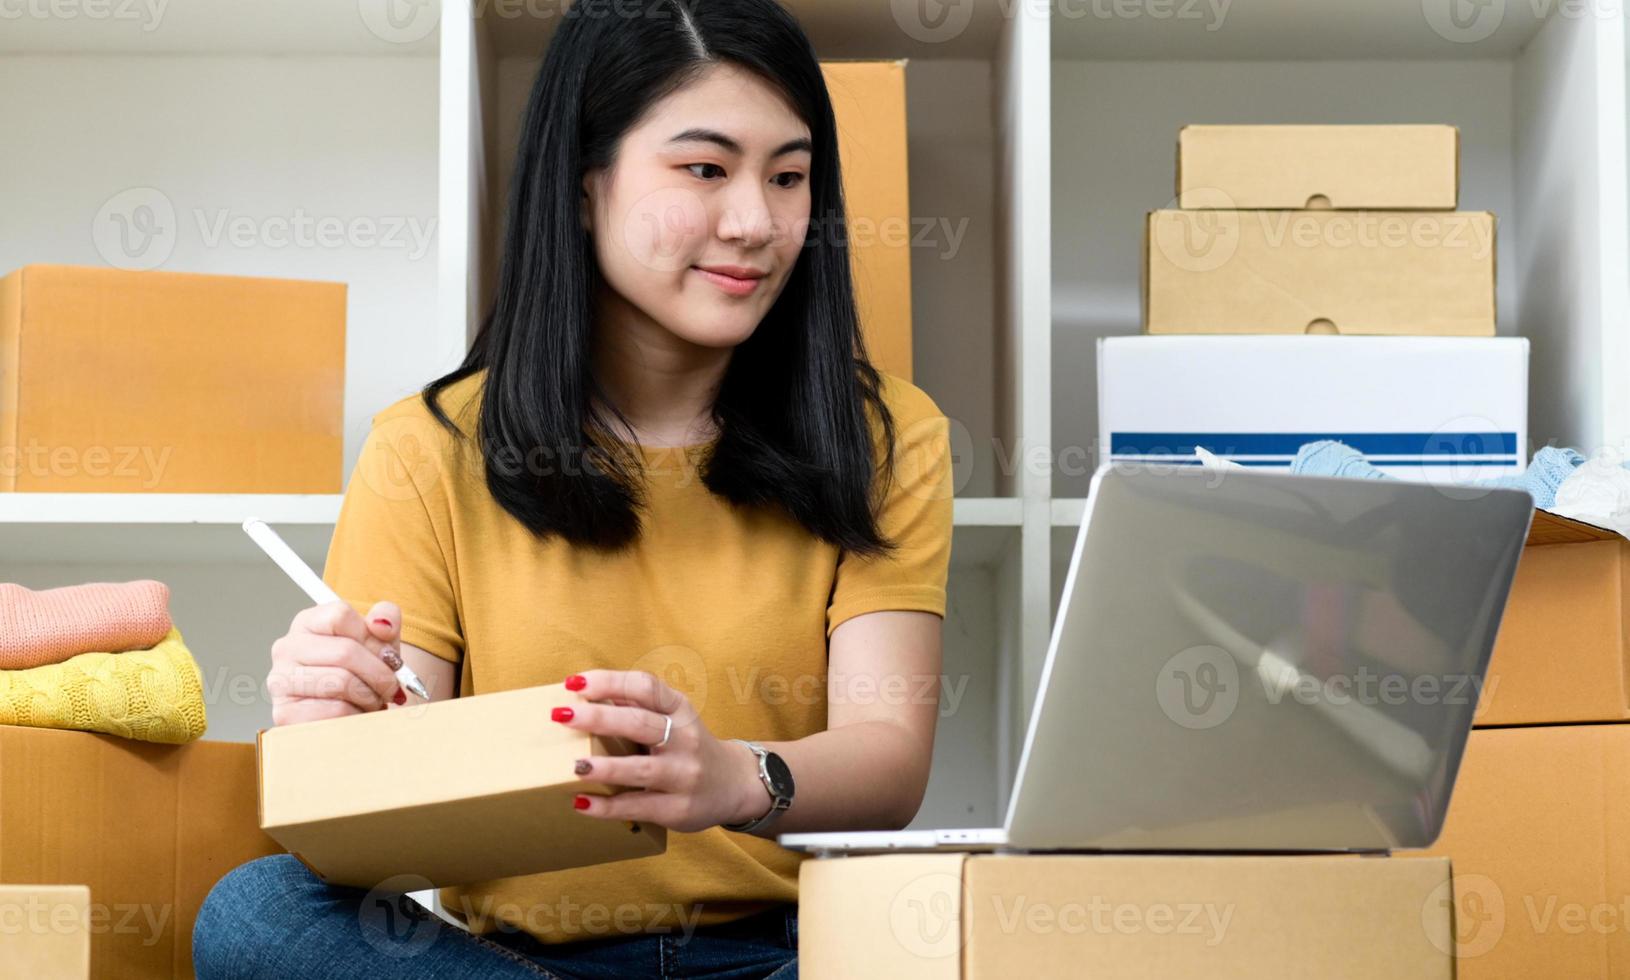 donna che guarda lo schermo del laptop e scrive l'indirizzo sulla cassetta dei pacchi, vendita online, consegna pacchi. foto